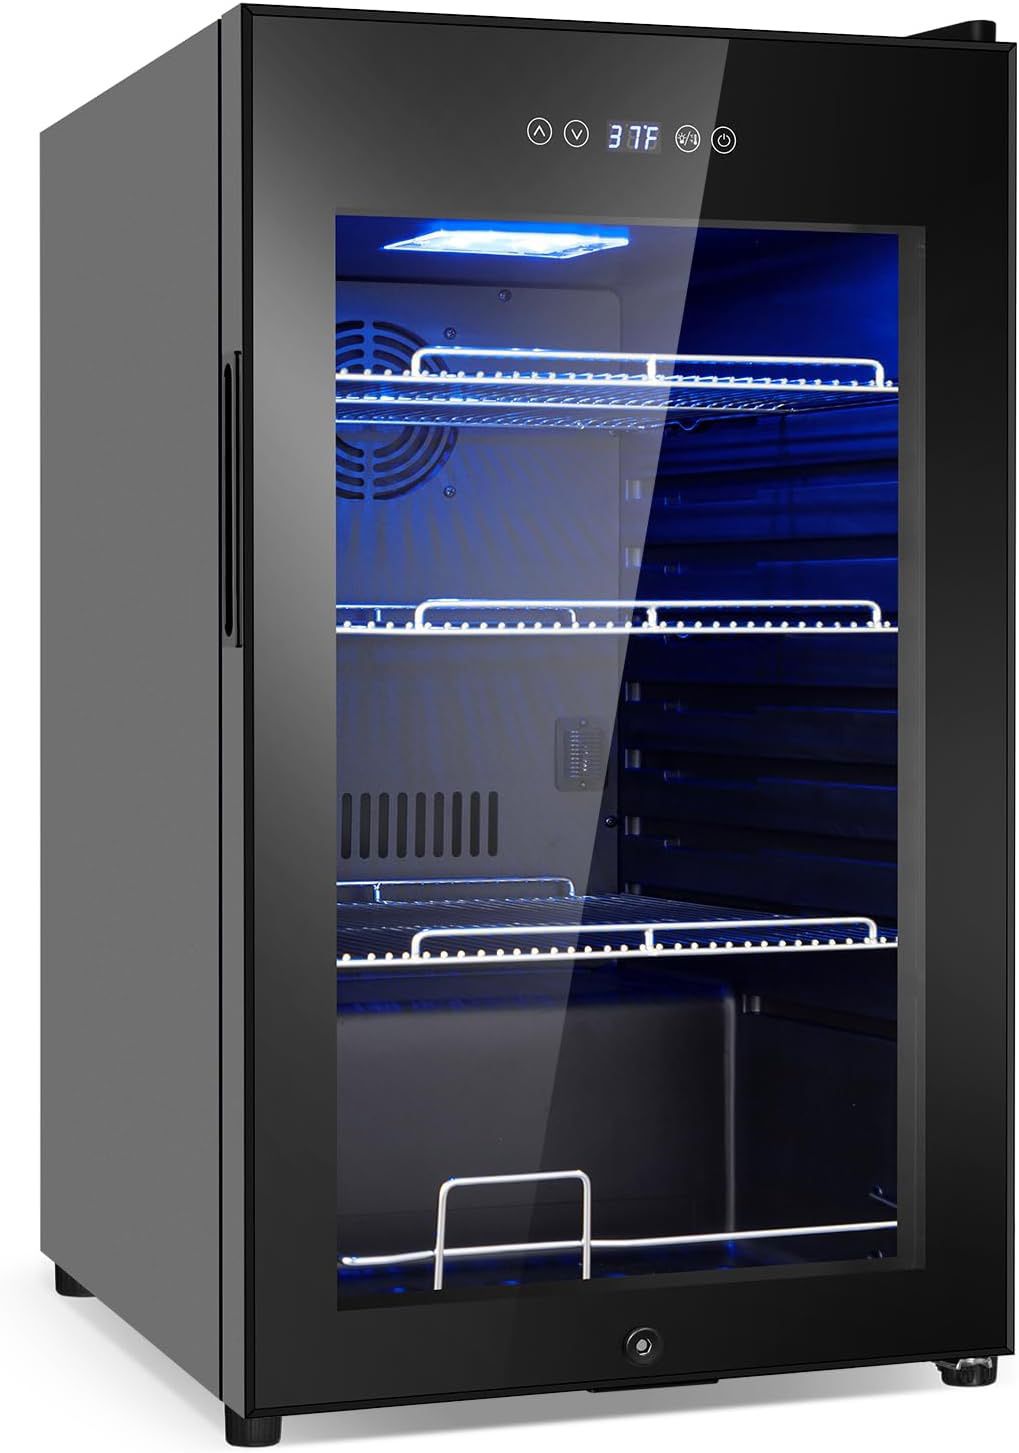 Beverage Refrigerator 17 inch Wide - 126 Can Beverage Cooler with Glass Door | Counter-Top/Freestanding Mini Beverage Beer Fridge | Temperature Memory